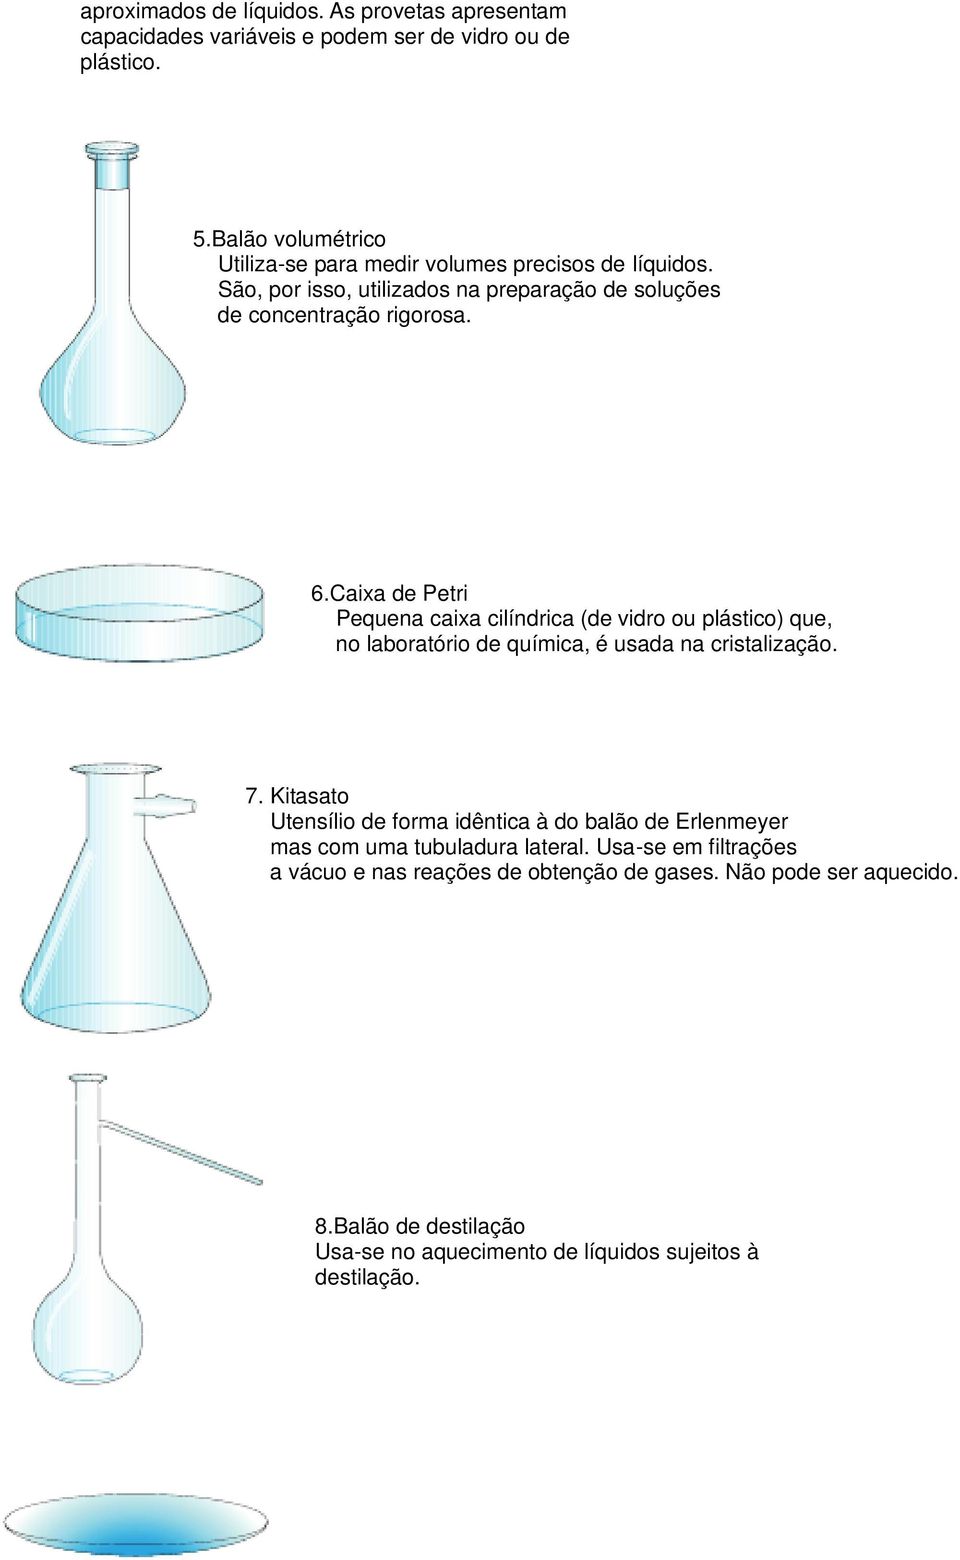 Caixa de Petri Pequena caixa cilíndrica (de vidro ou plástico) que, no laboratório de química, é usada na cristalização. 7.